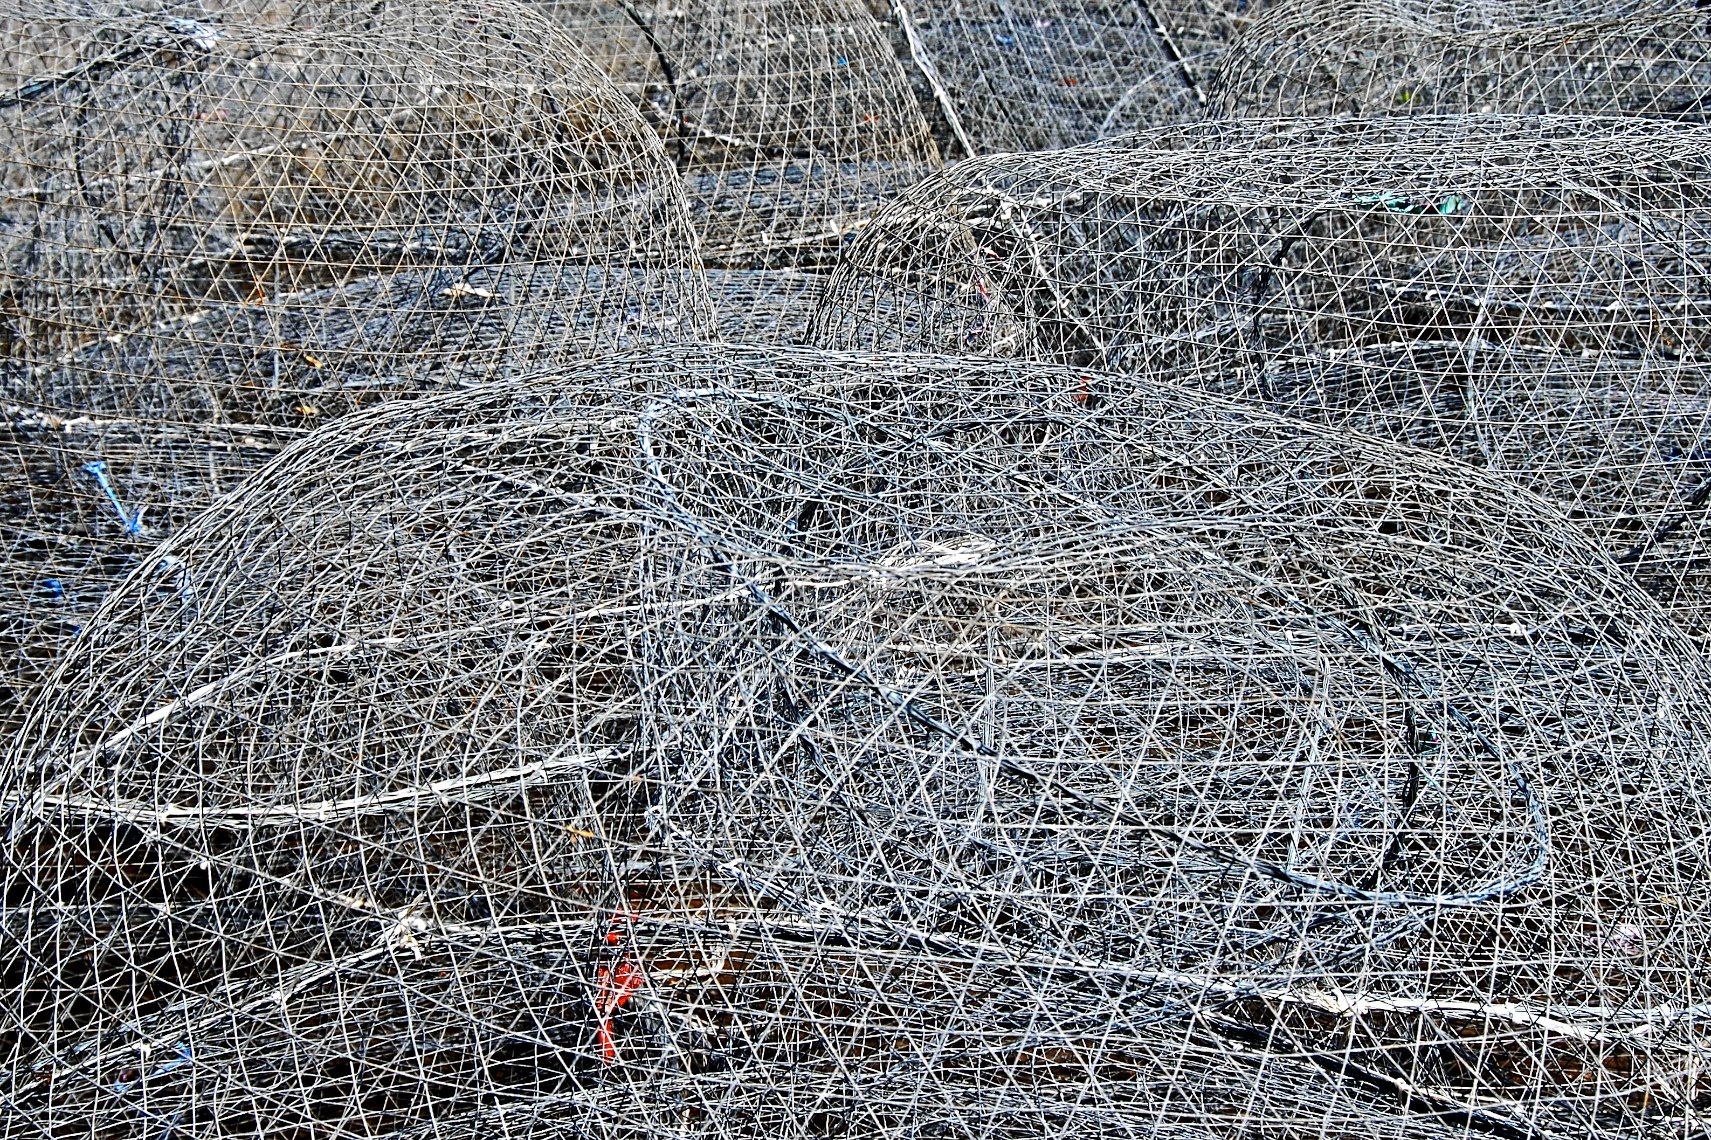 Qatar fishing tools